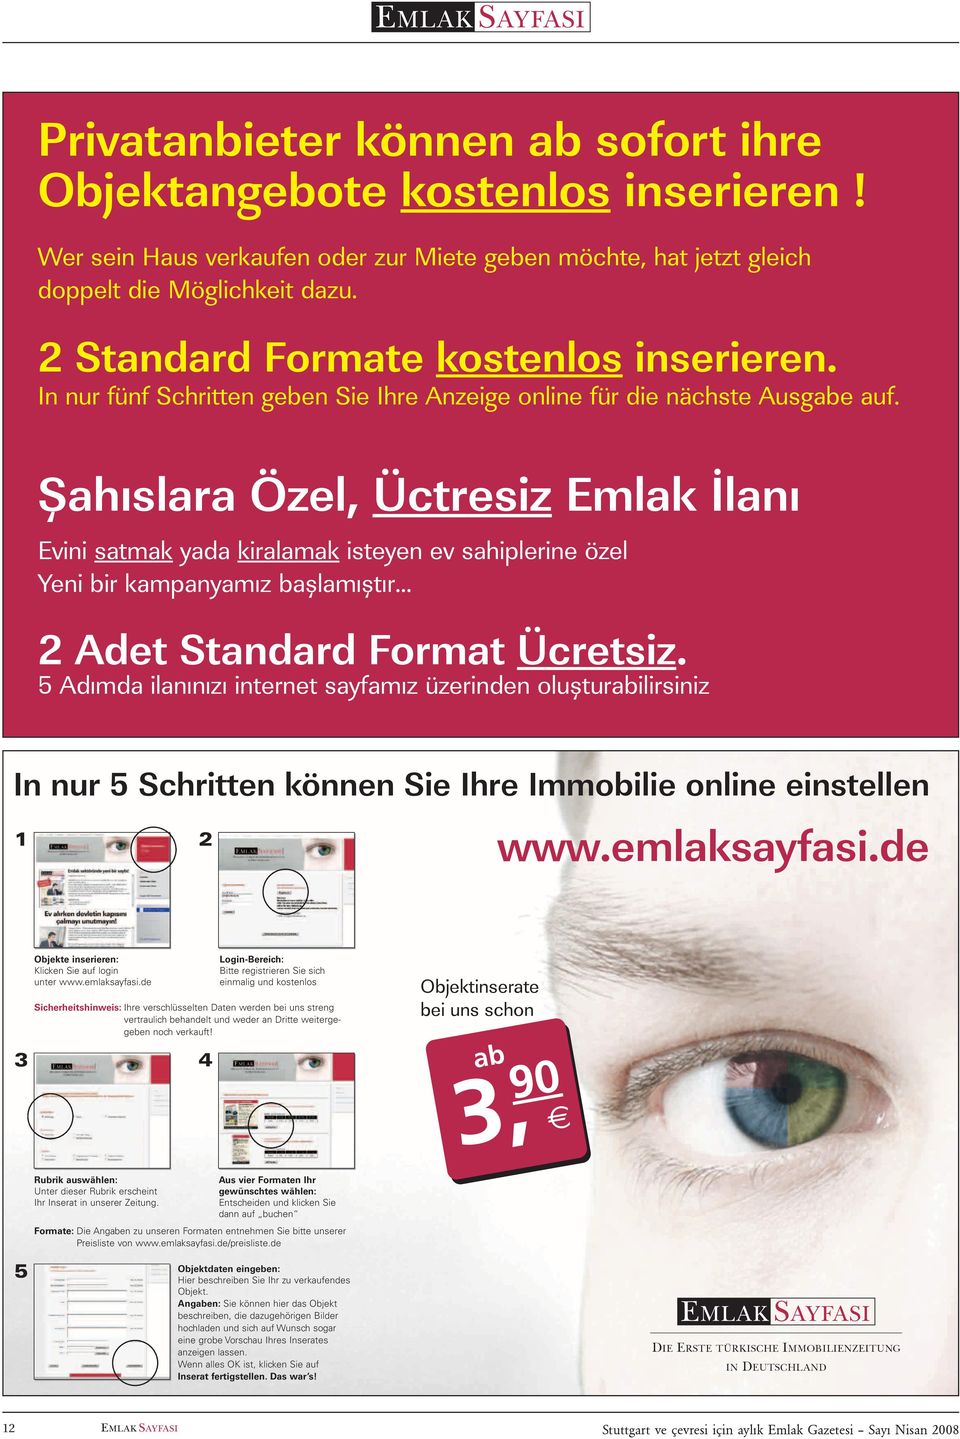 Þahýslara Özel, Üctresiz Emlak Ýlaný Evini satmak yada kiralamak isteyen ev sahiplerine özel Yeni bir kampanyamýz baþlamýþtýr 2 Adet Standard Format Ücretsiz.